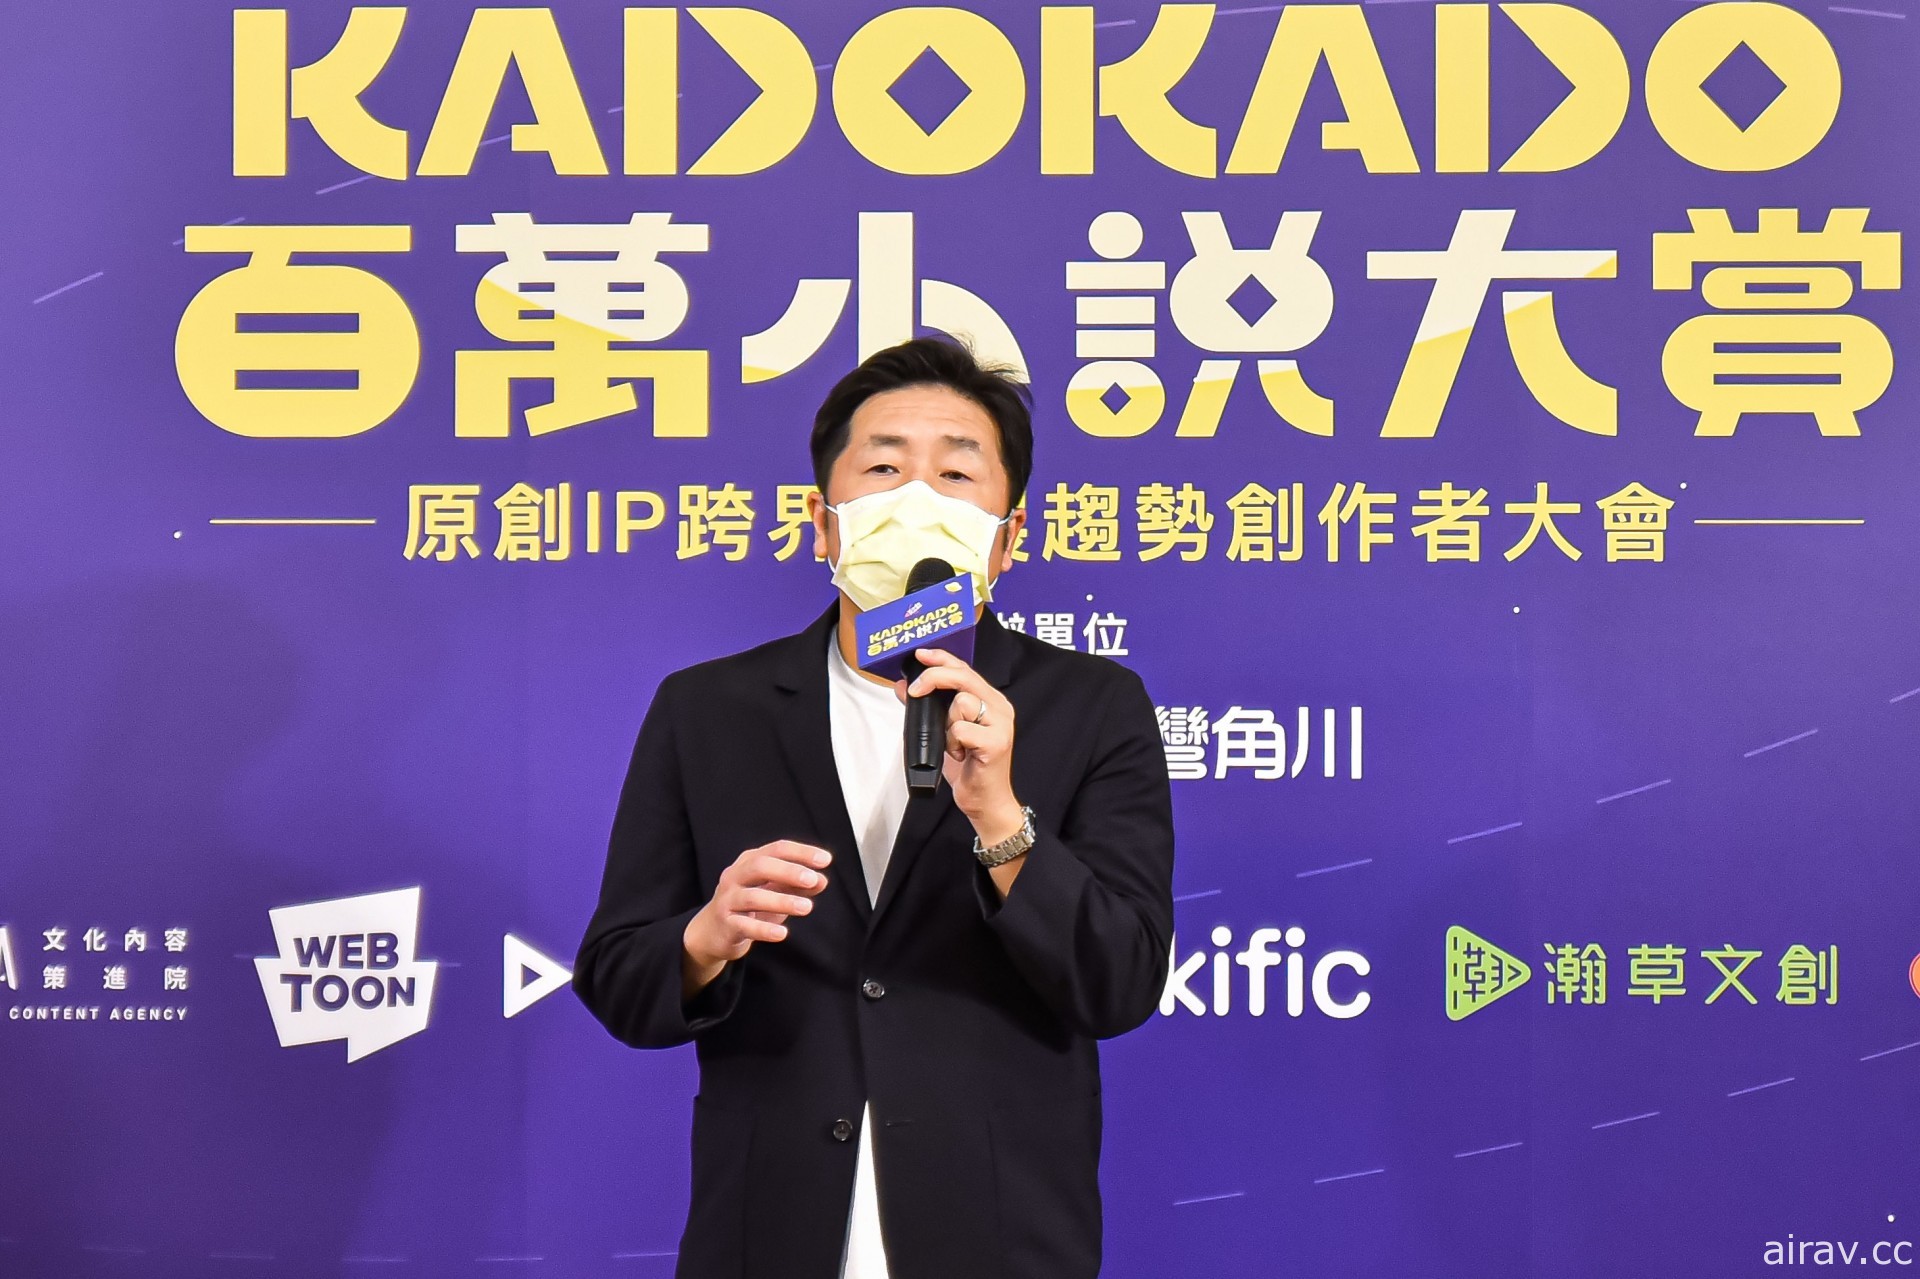 KadoKado 百萬小說創作大賞 6 月起活動正式展開